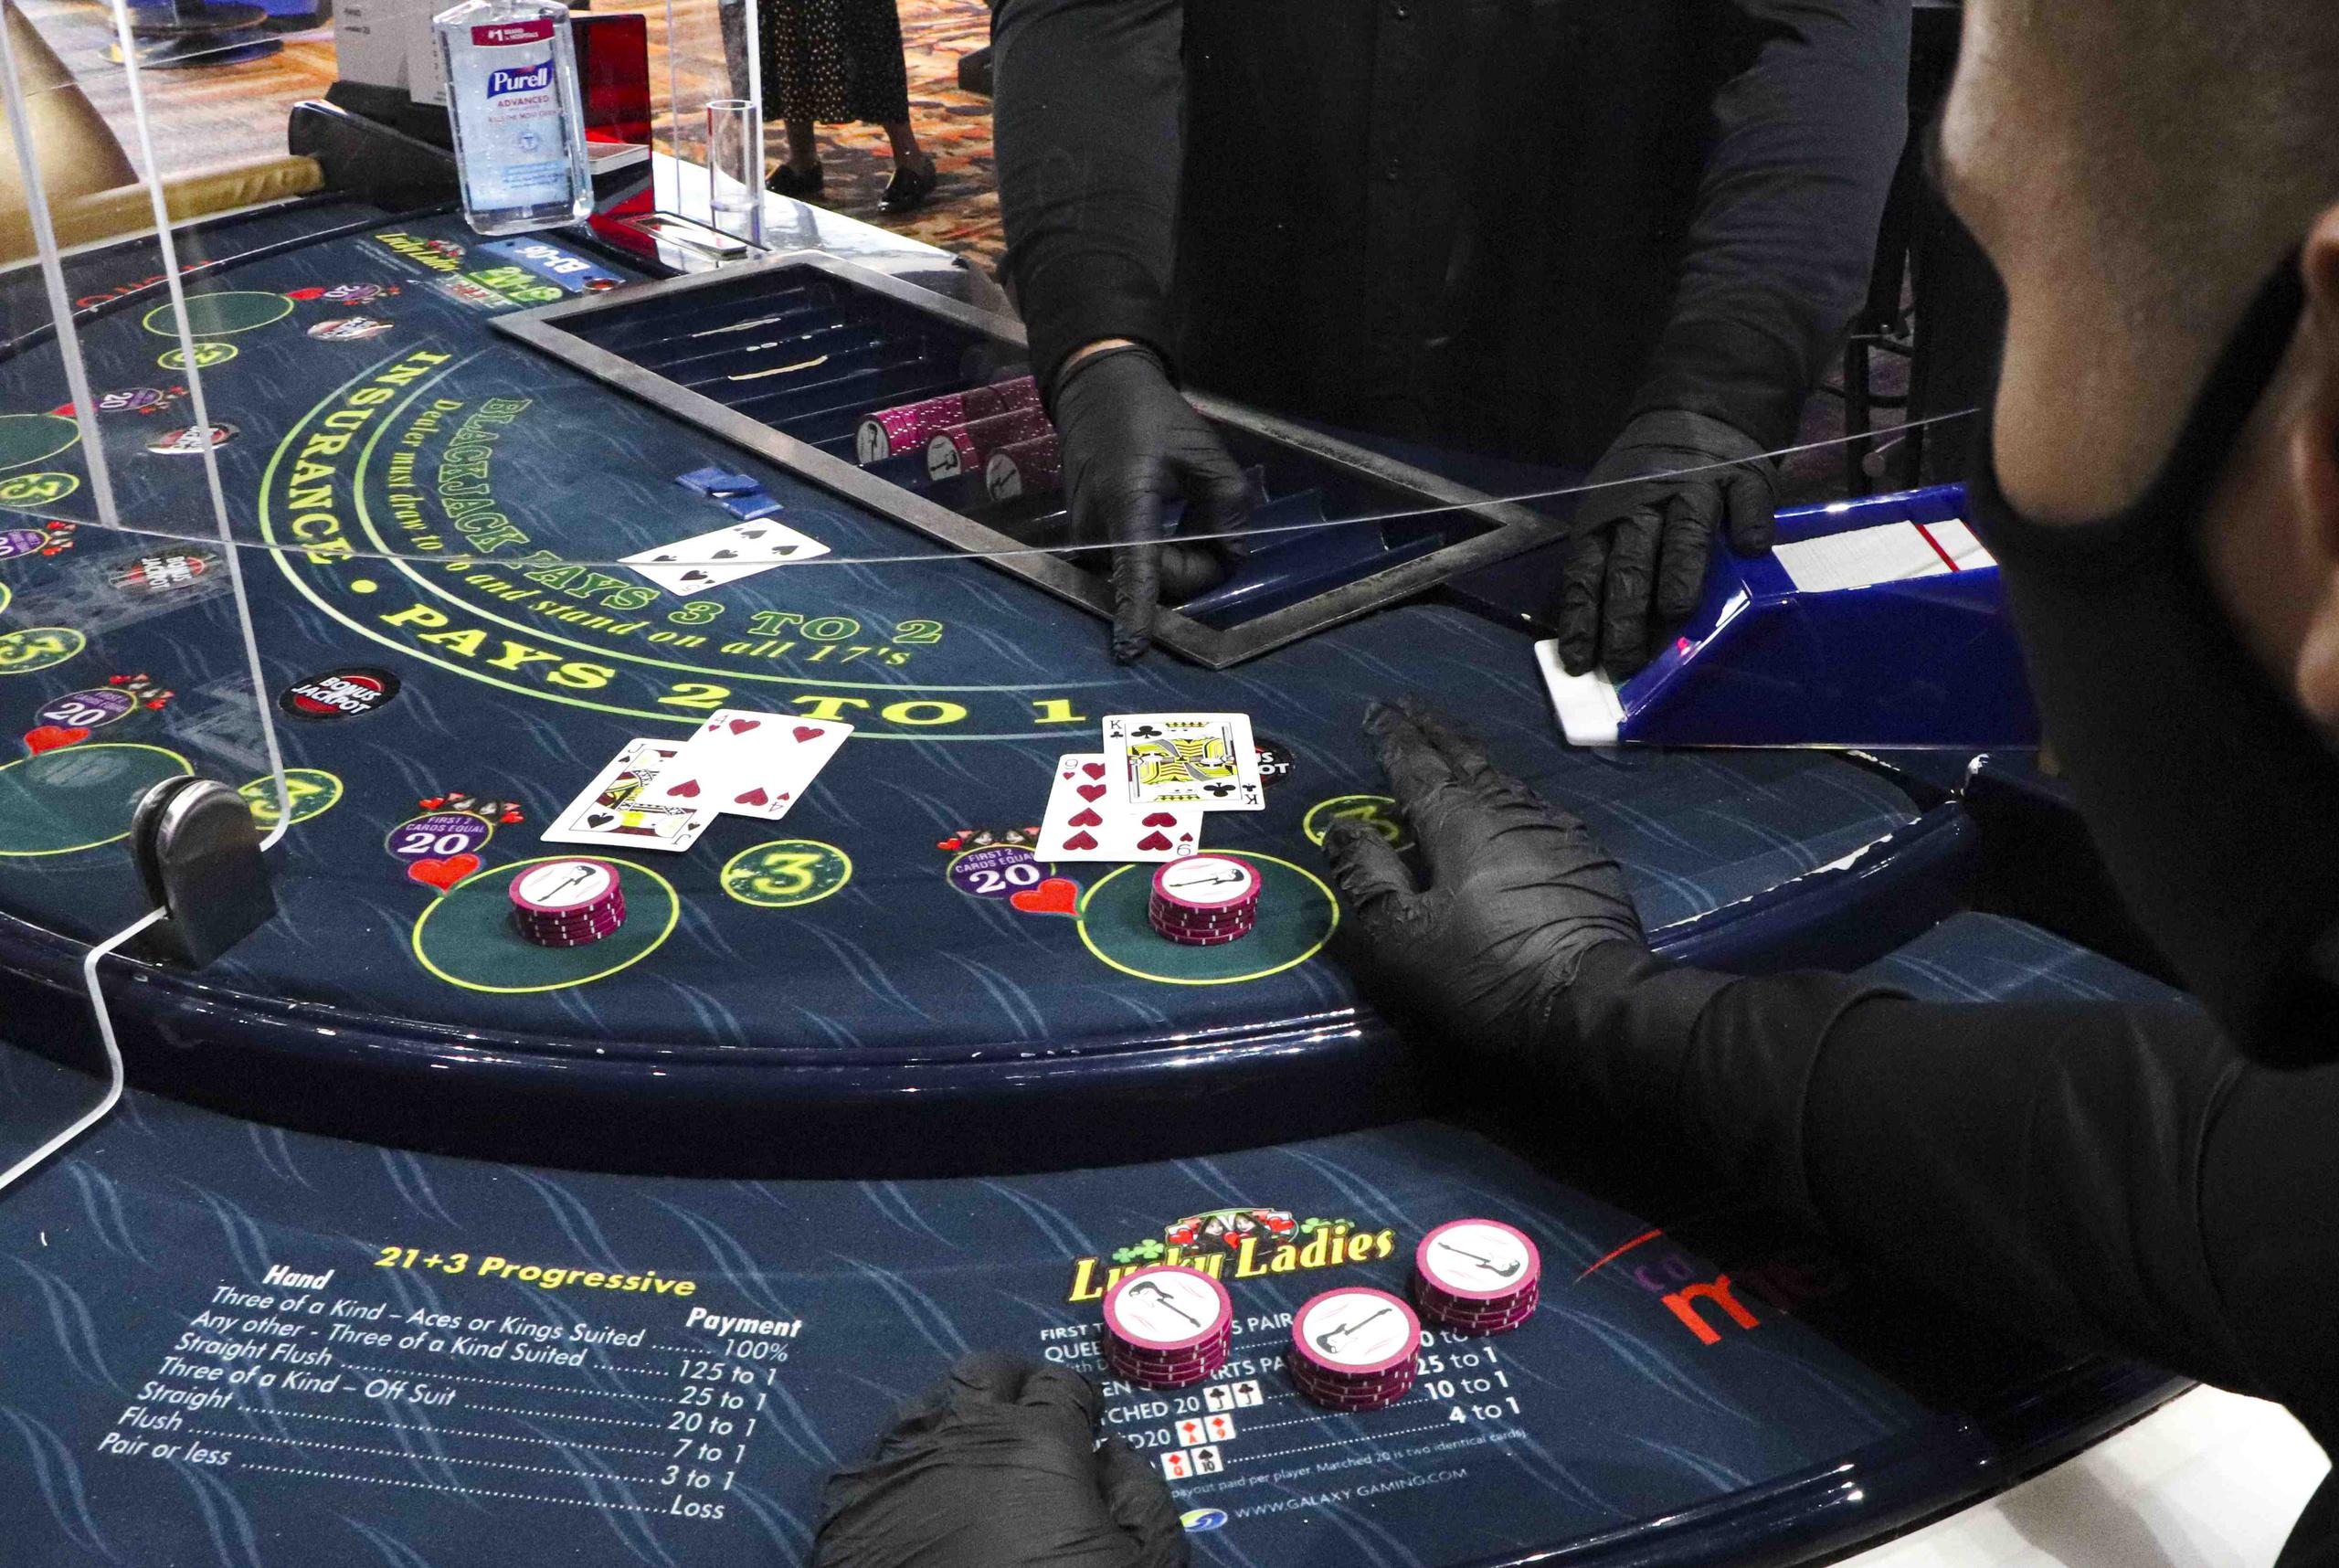 Los 16 casinos de la isla emplean a unas 3,000 personas, de las cuales más del 90% han estado sin trabajar desde el pasado 15 de marzo.